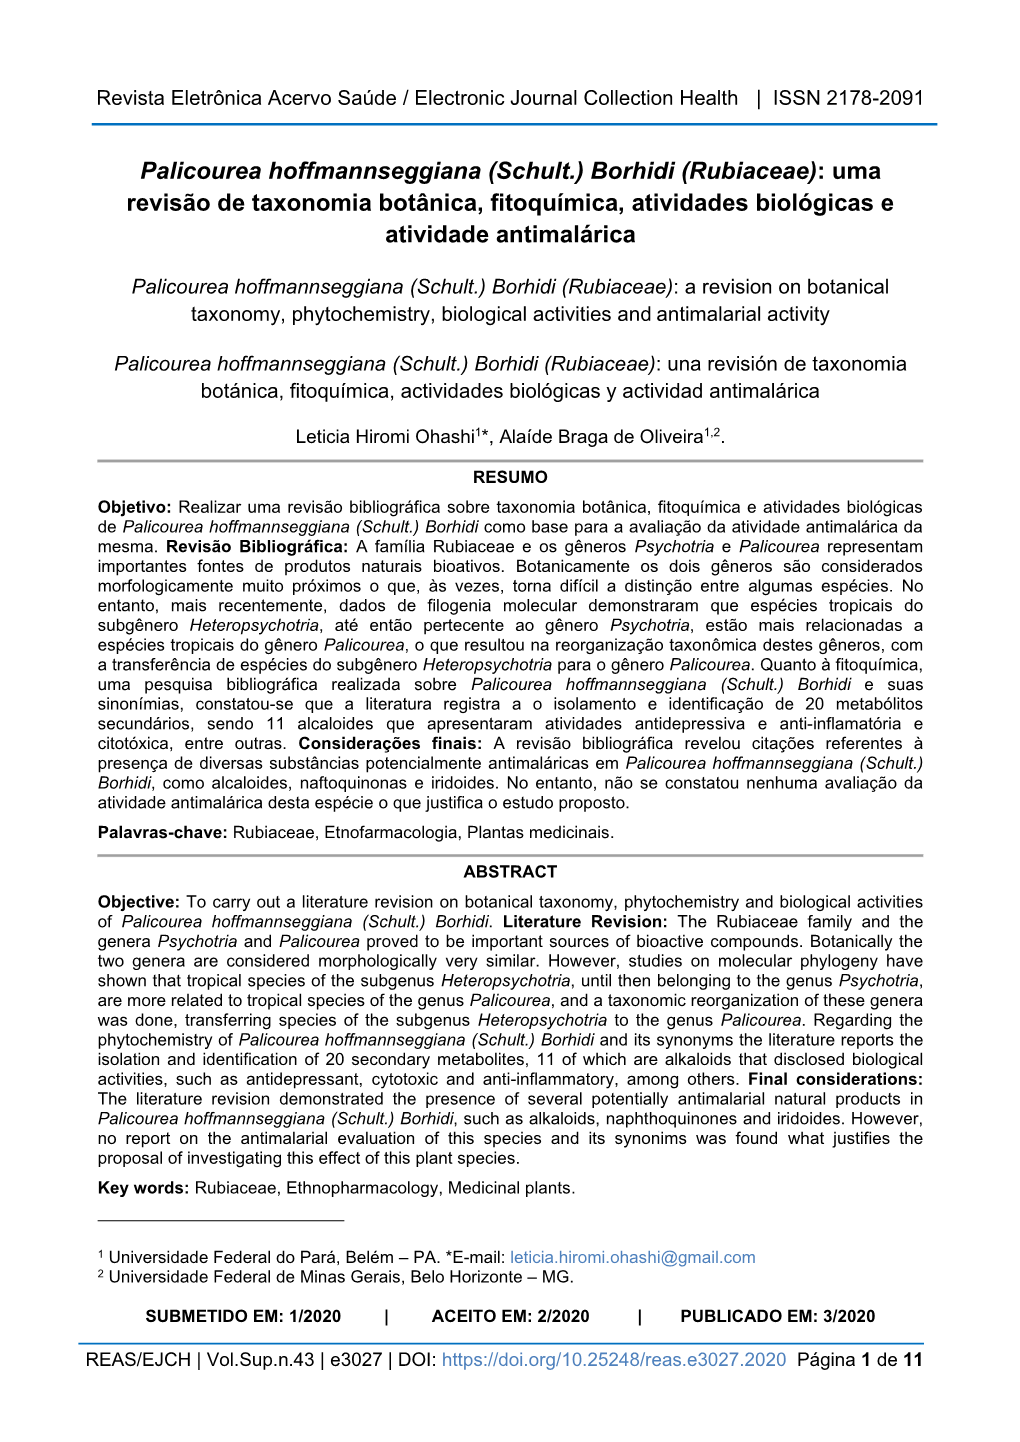 Palicourea Hoffmannseggiana (Schult.) Borhidi (Rubiaceae): Uma Revisão De Taxonomia Botânica, Fitoquímica, Atividades Biológicas E Atividade Antimalárica